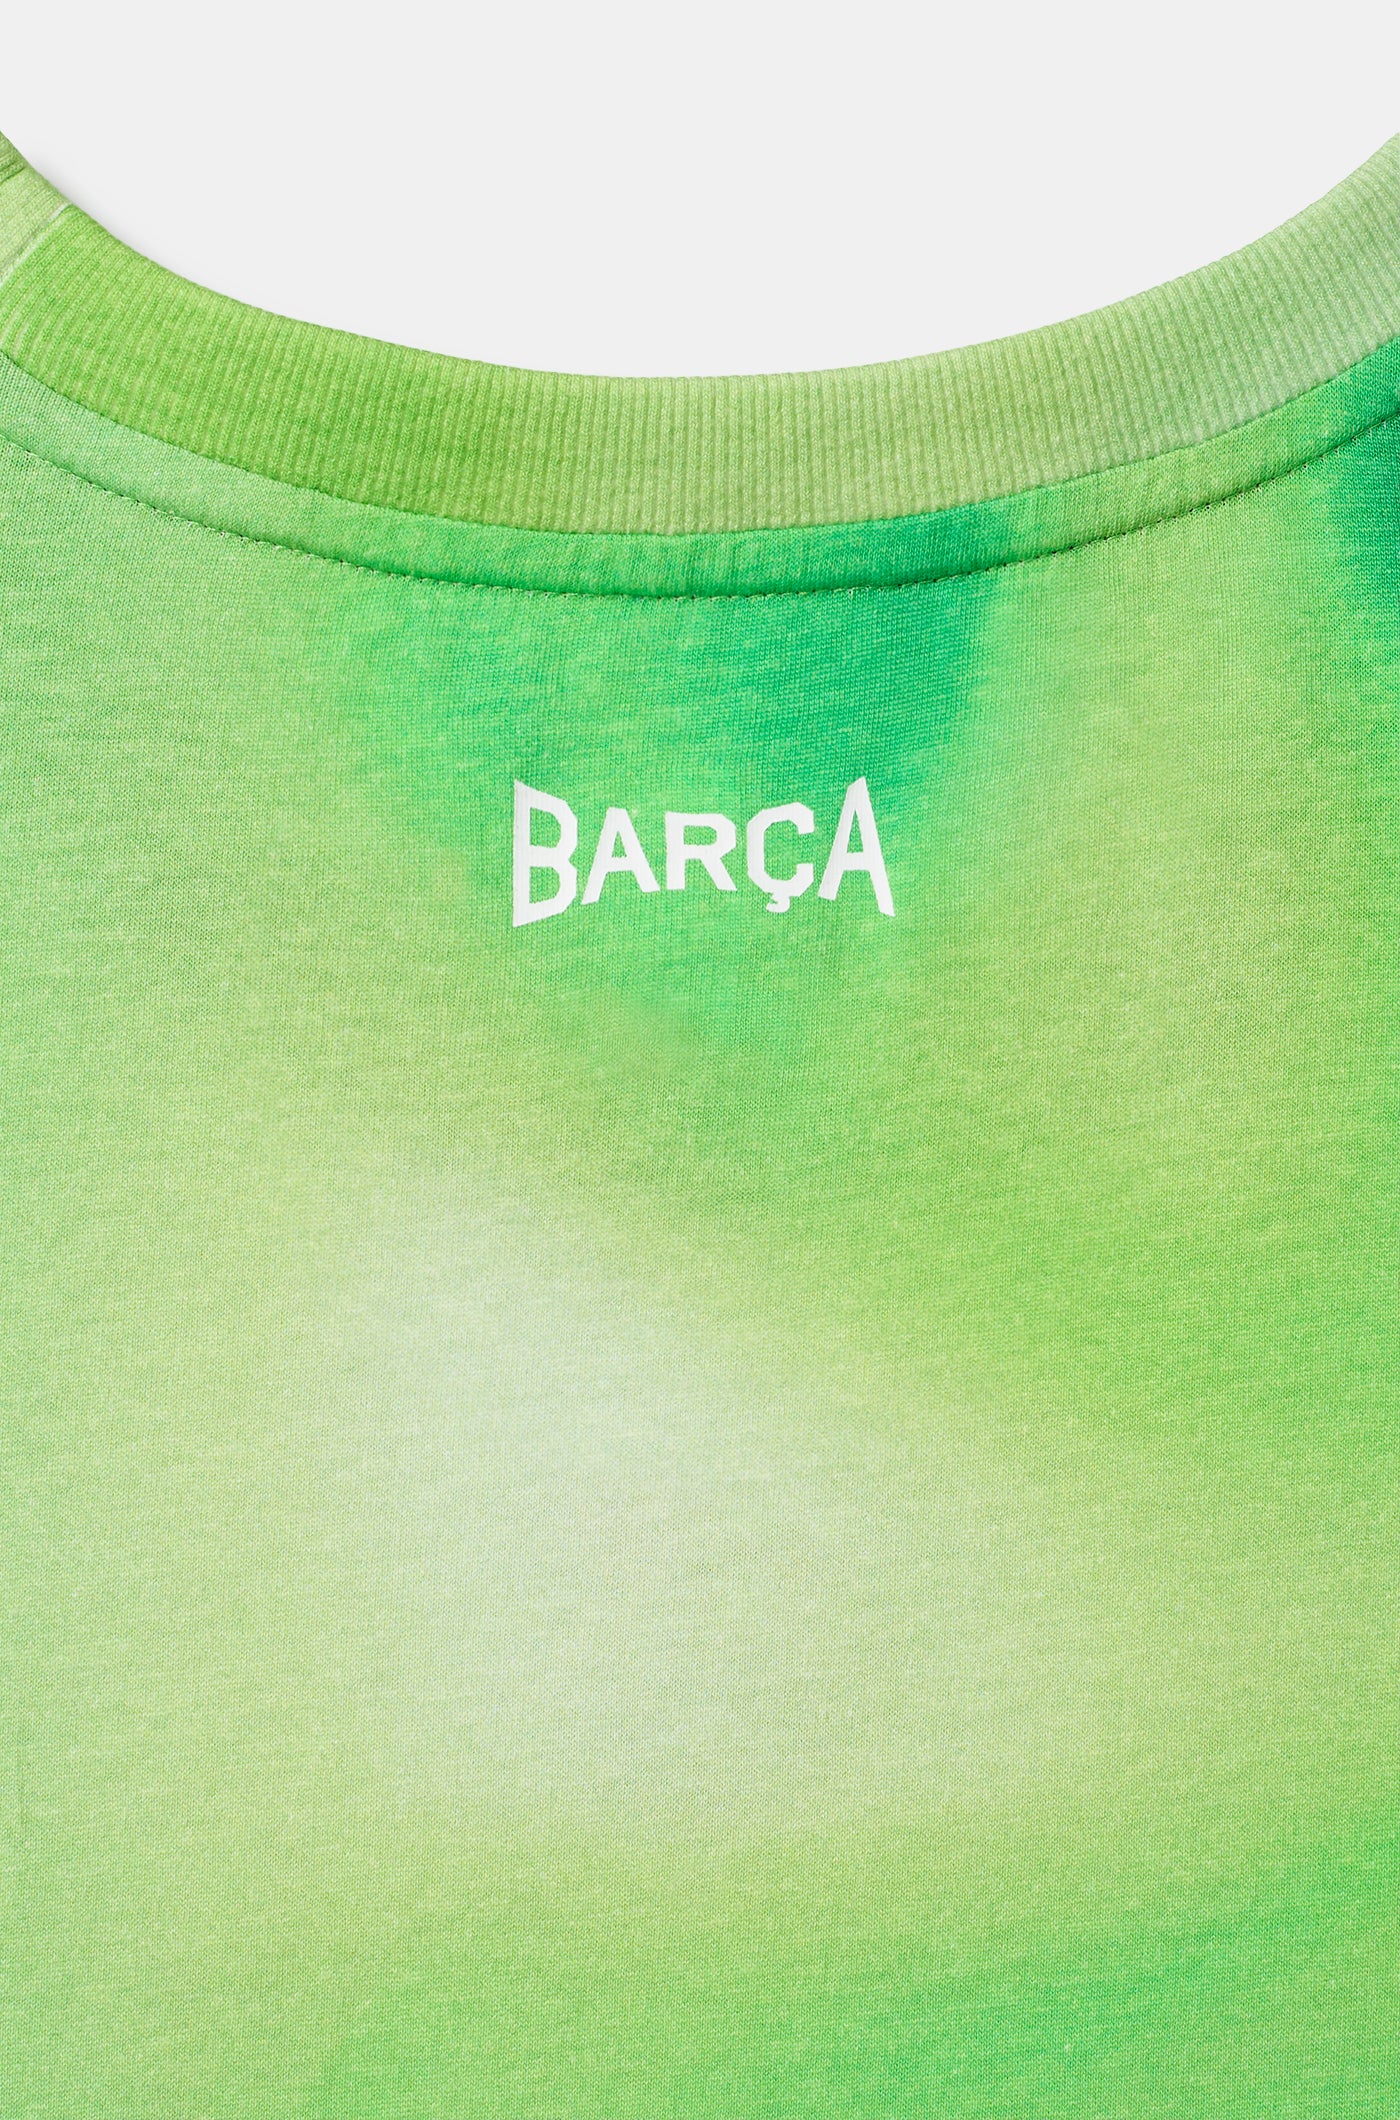  Tanktop grün Barça